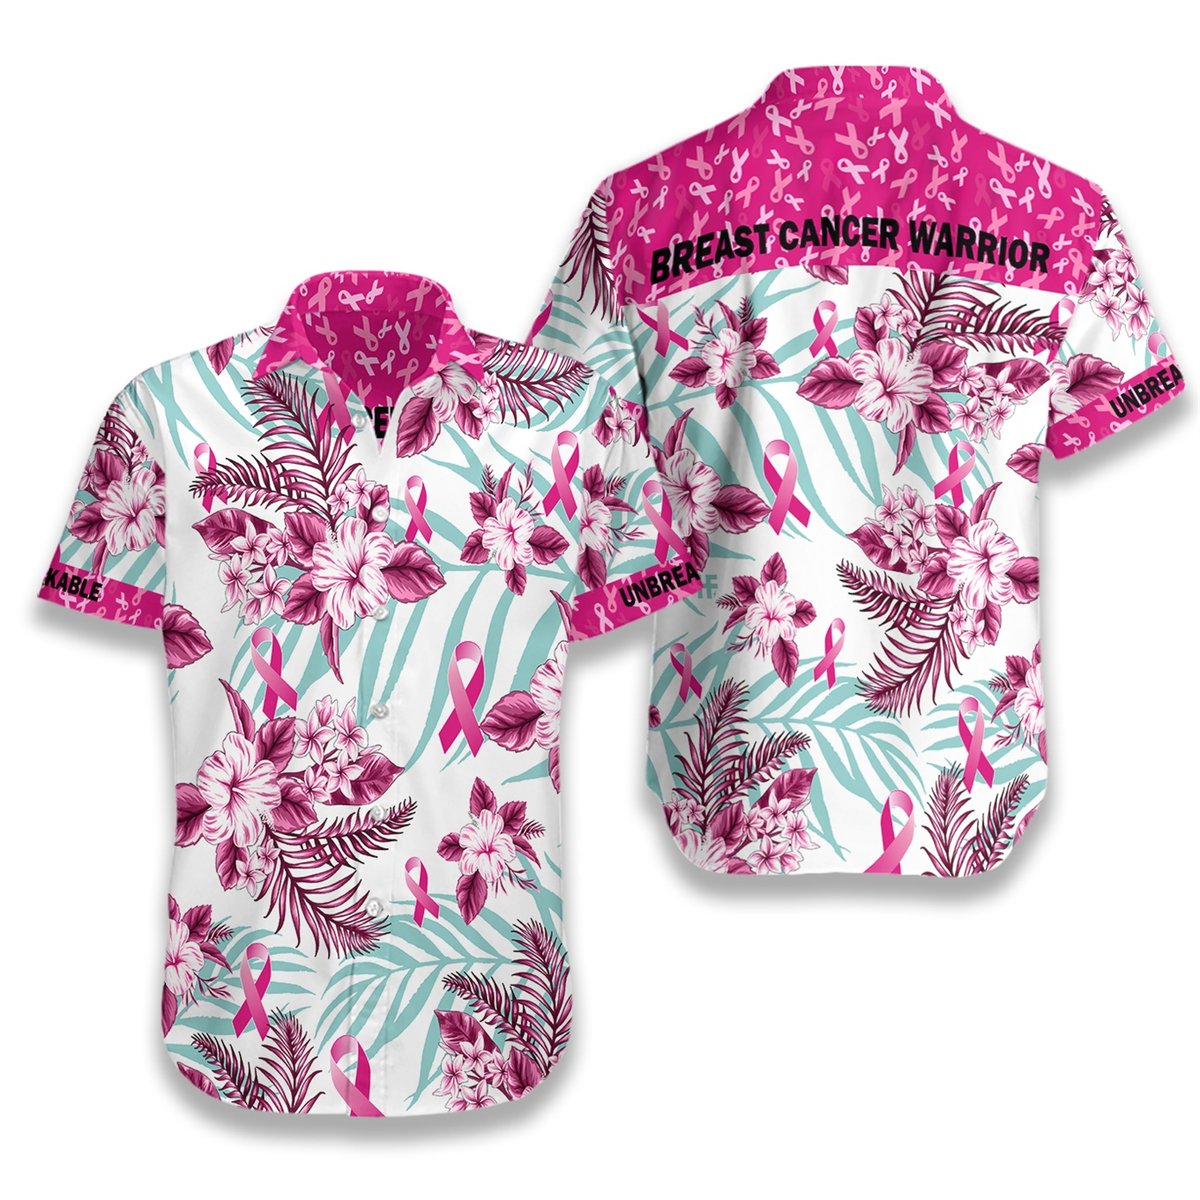 Breast Cancer warrior Hawaiian Shirt